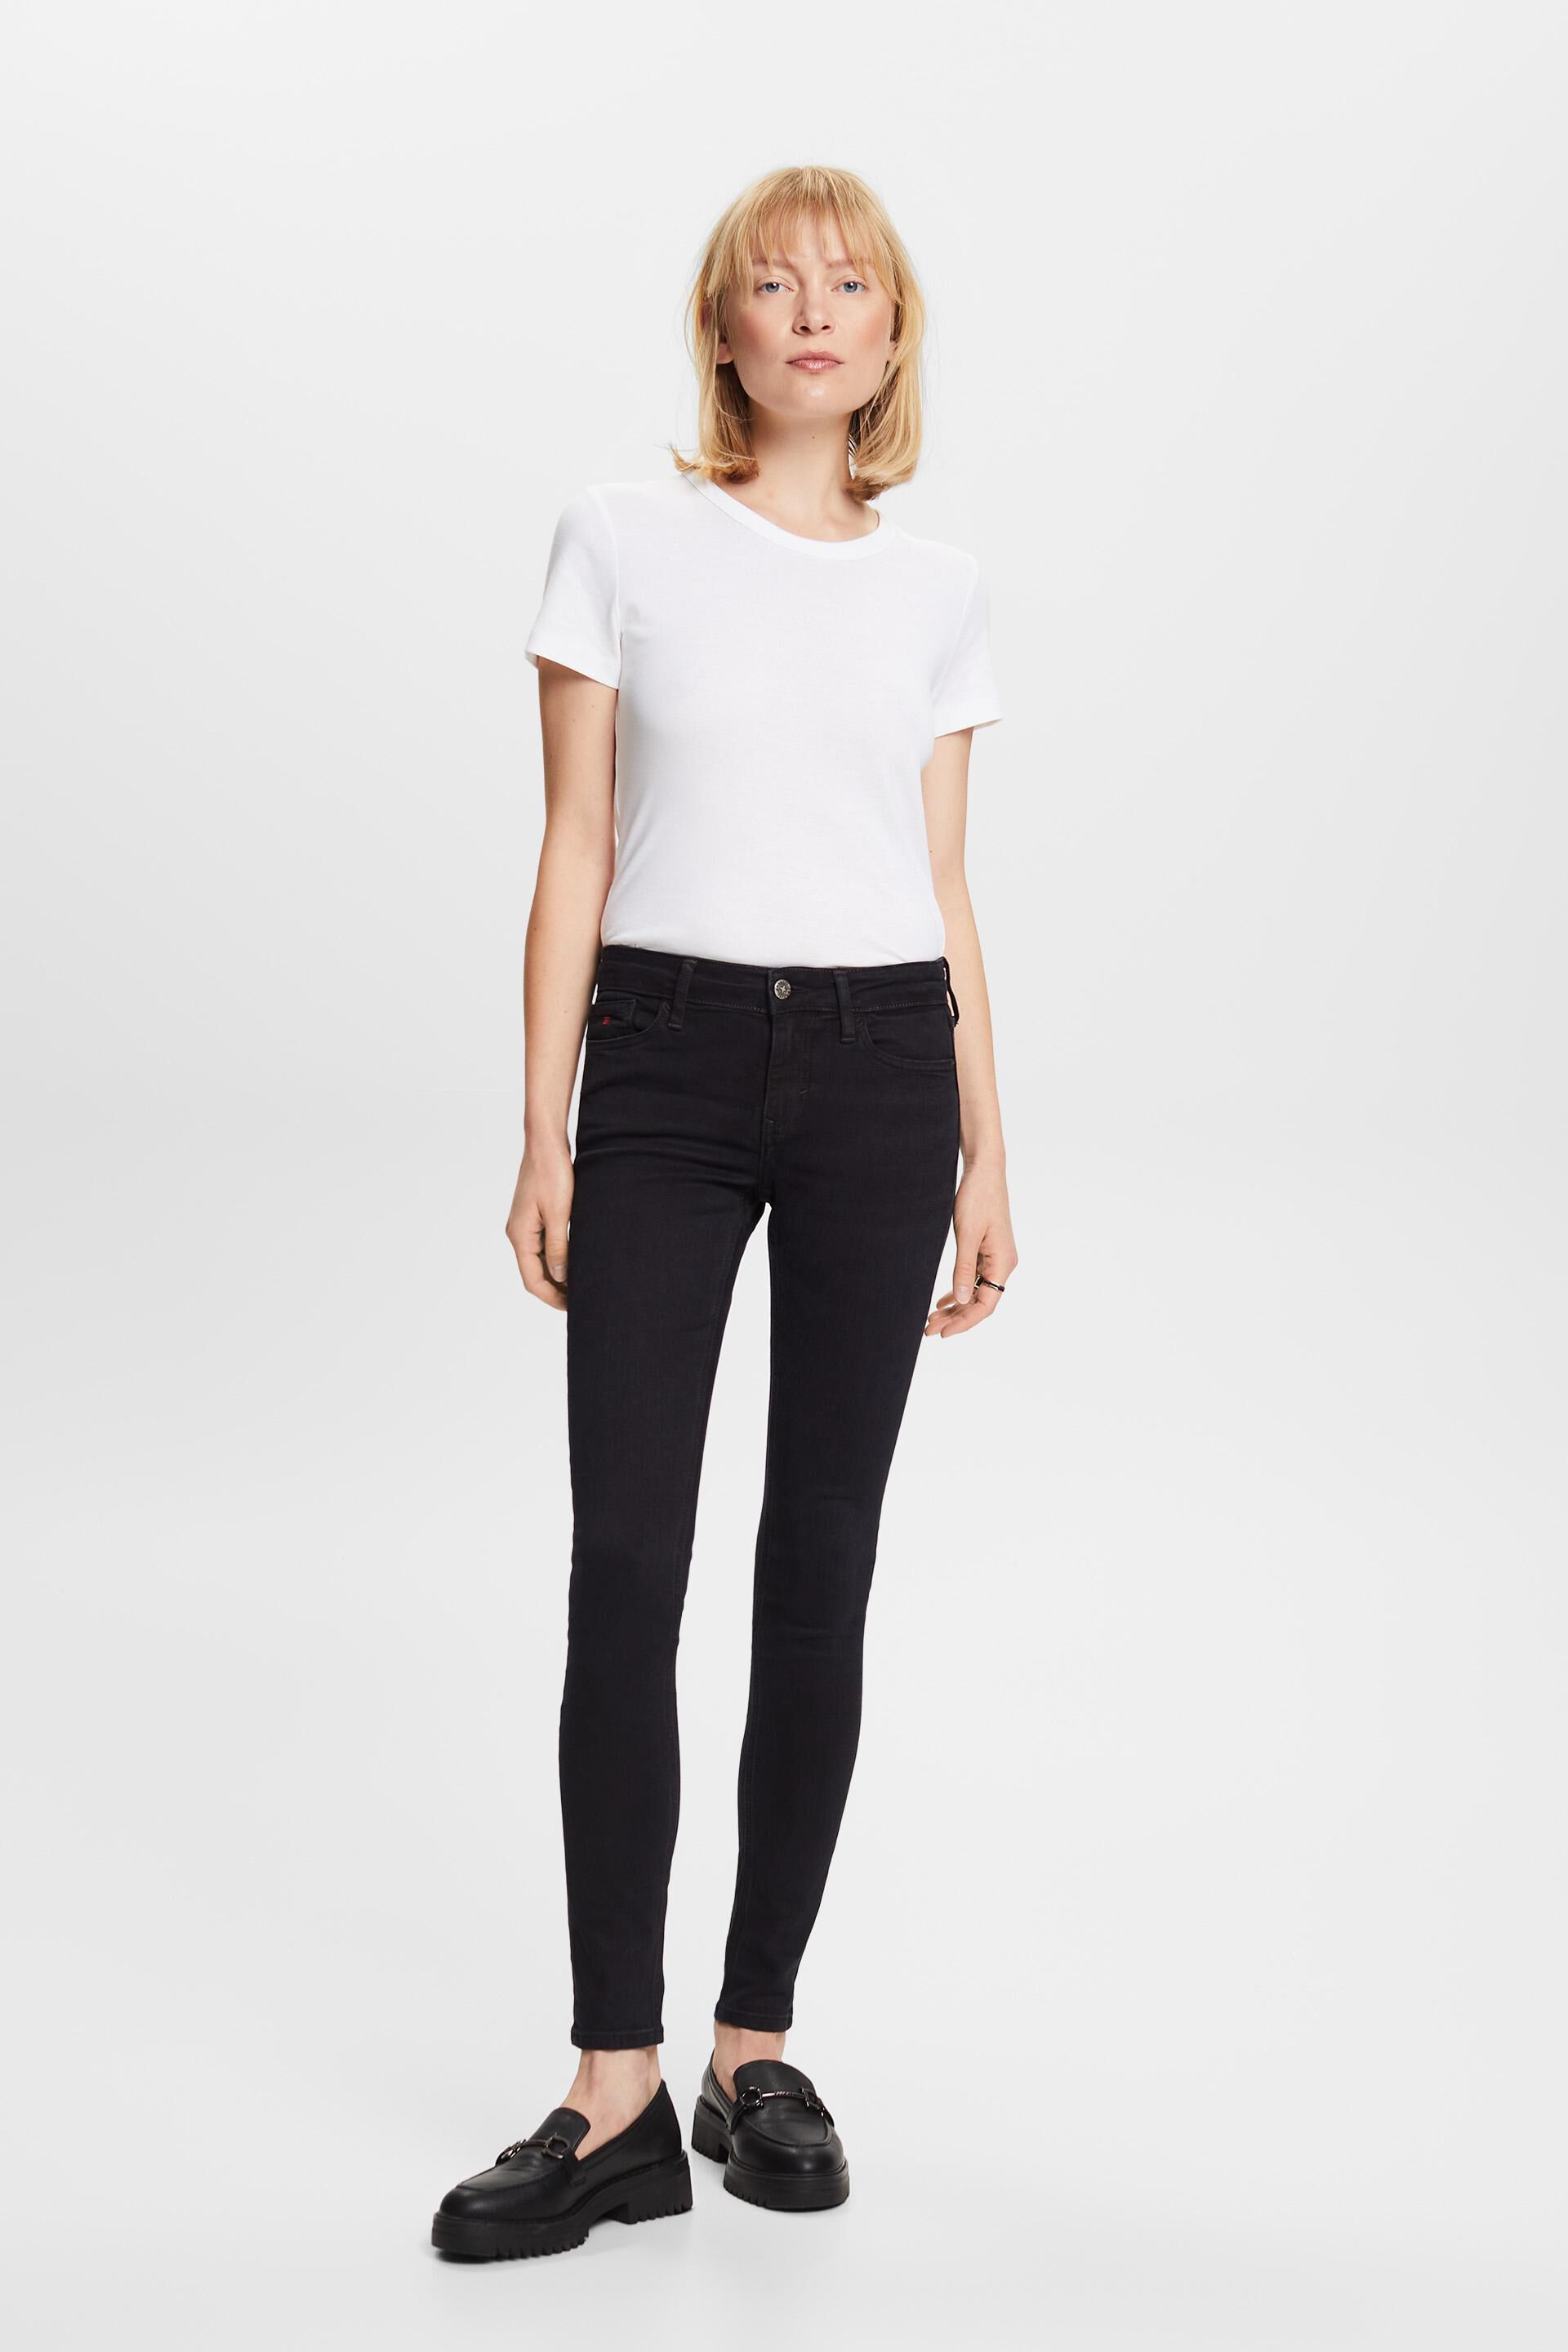 Esprit jeans Premium fit mid-rise skinny